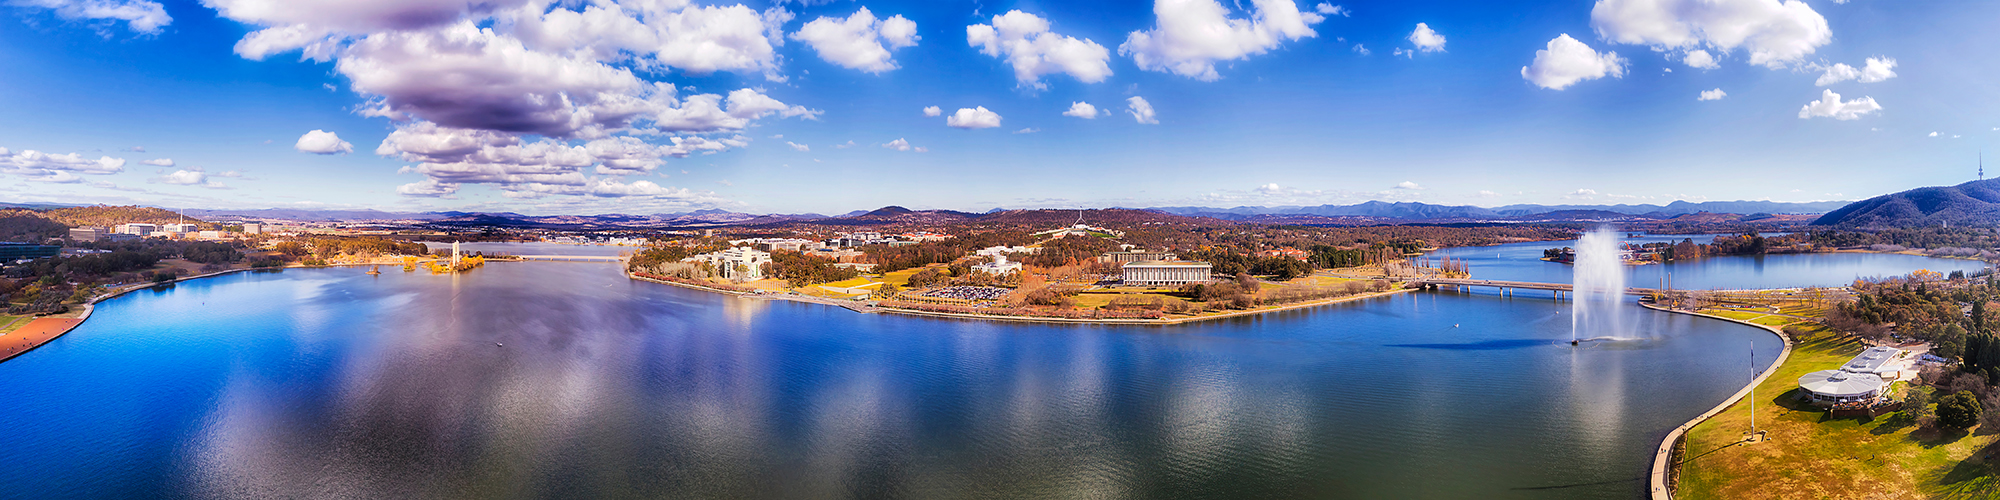 Canberra Landscape